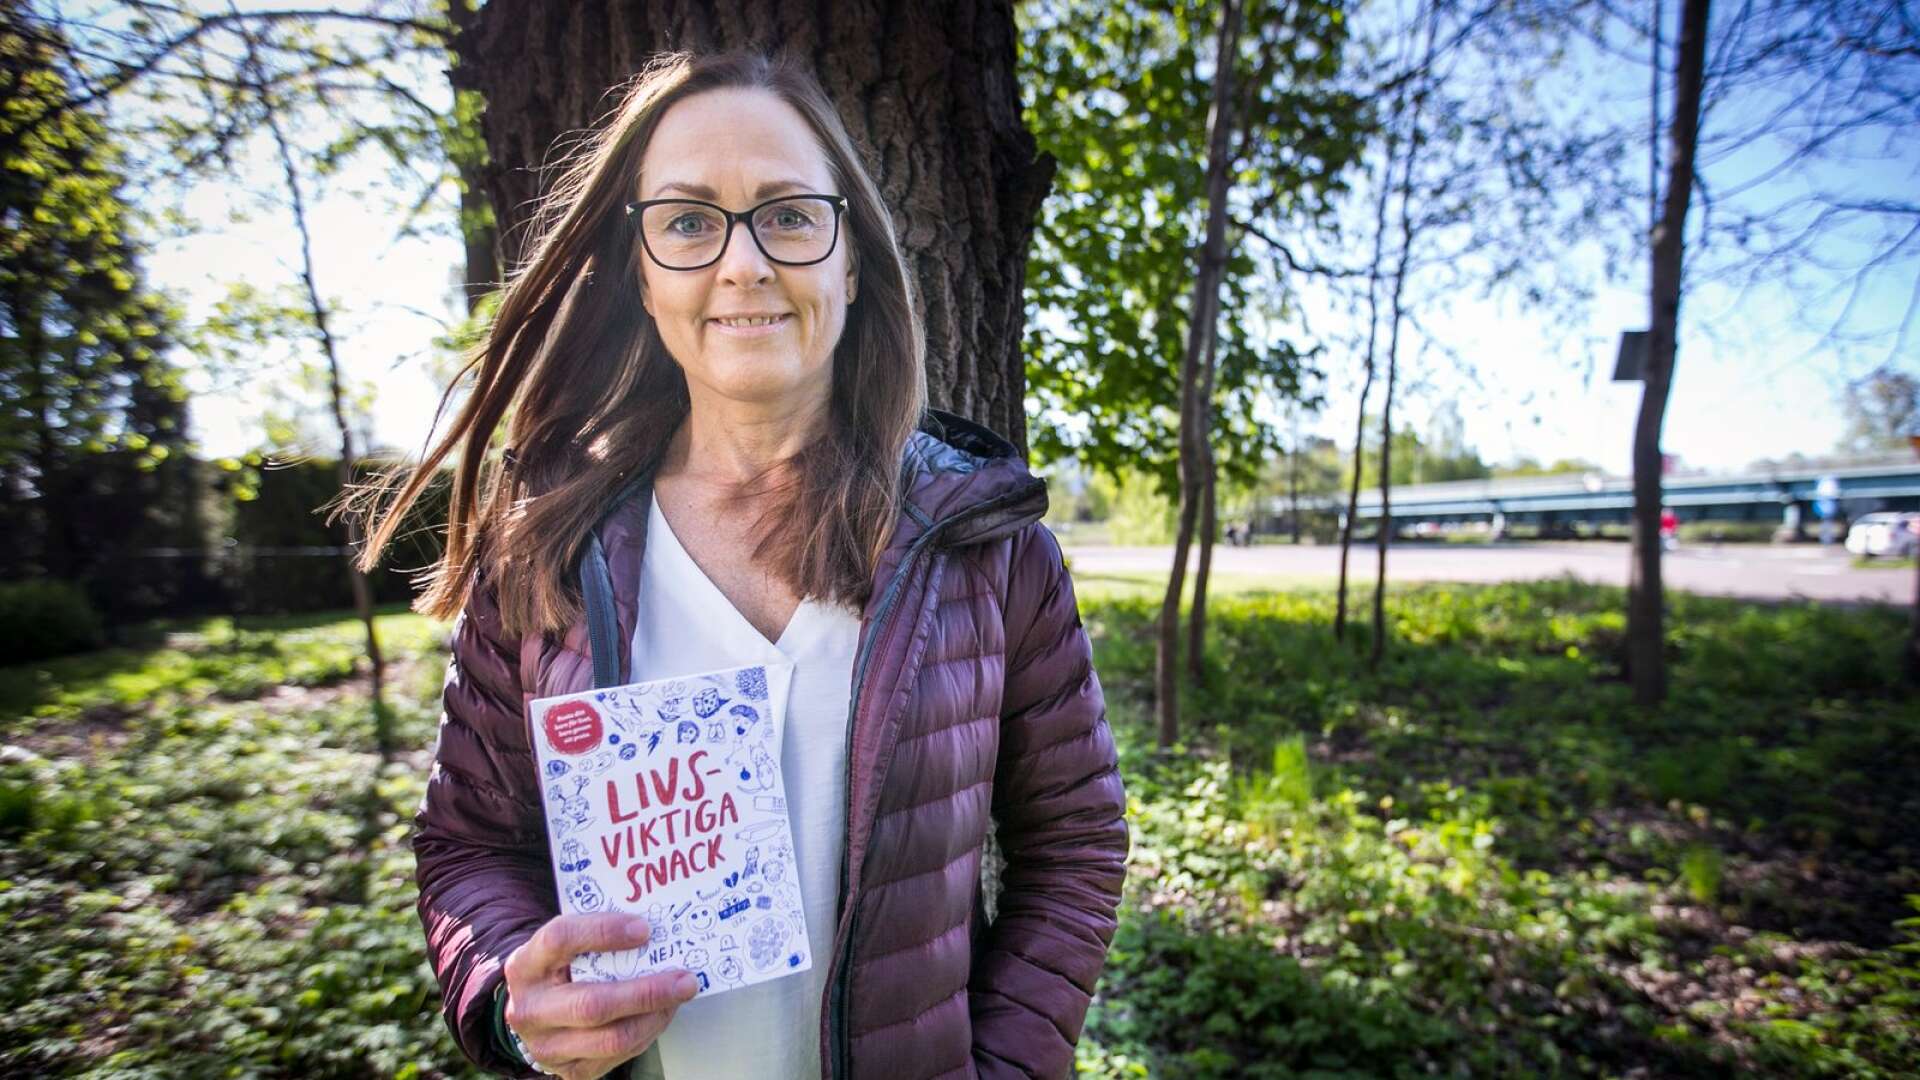 Ann Johnsson är volontär för organisationen Suicide zero som under veckan skickade ut en bok till över 100 000 hushåll i landet. Målet är att uppmuntra föräldrar till att prata om känslor med sina barn så att man kan förhindra suicidfall i god tid.